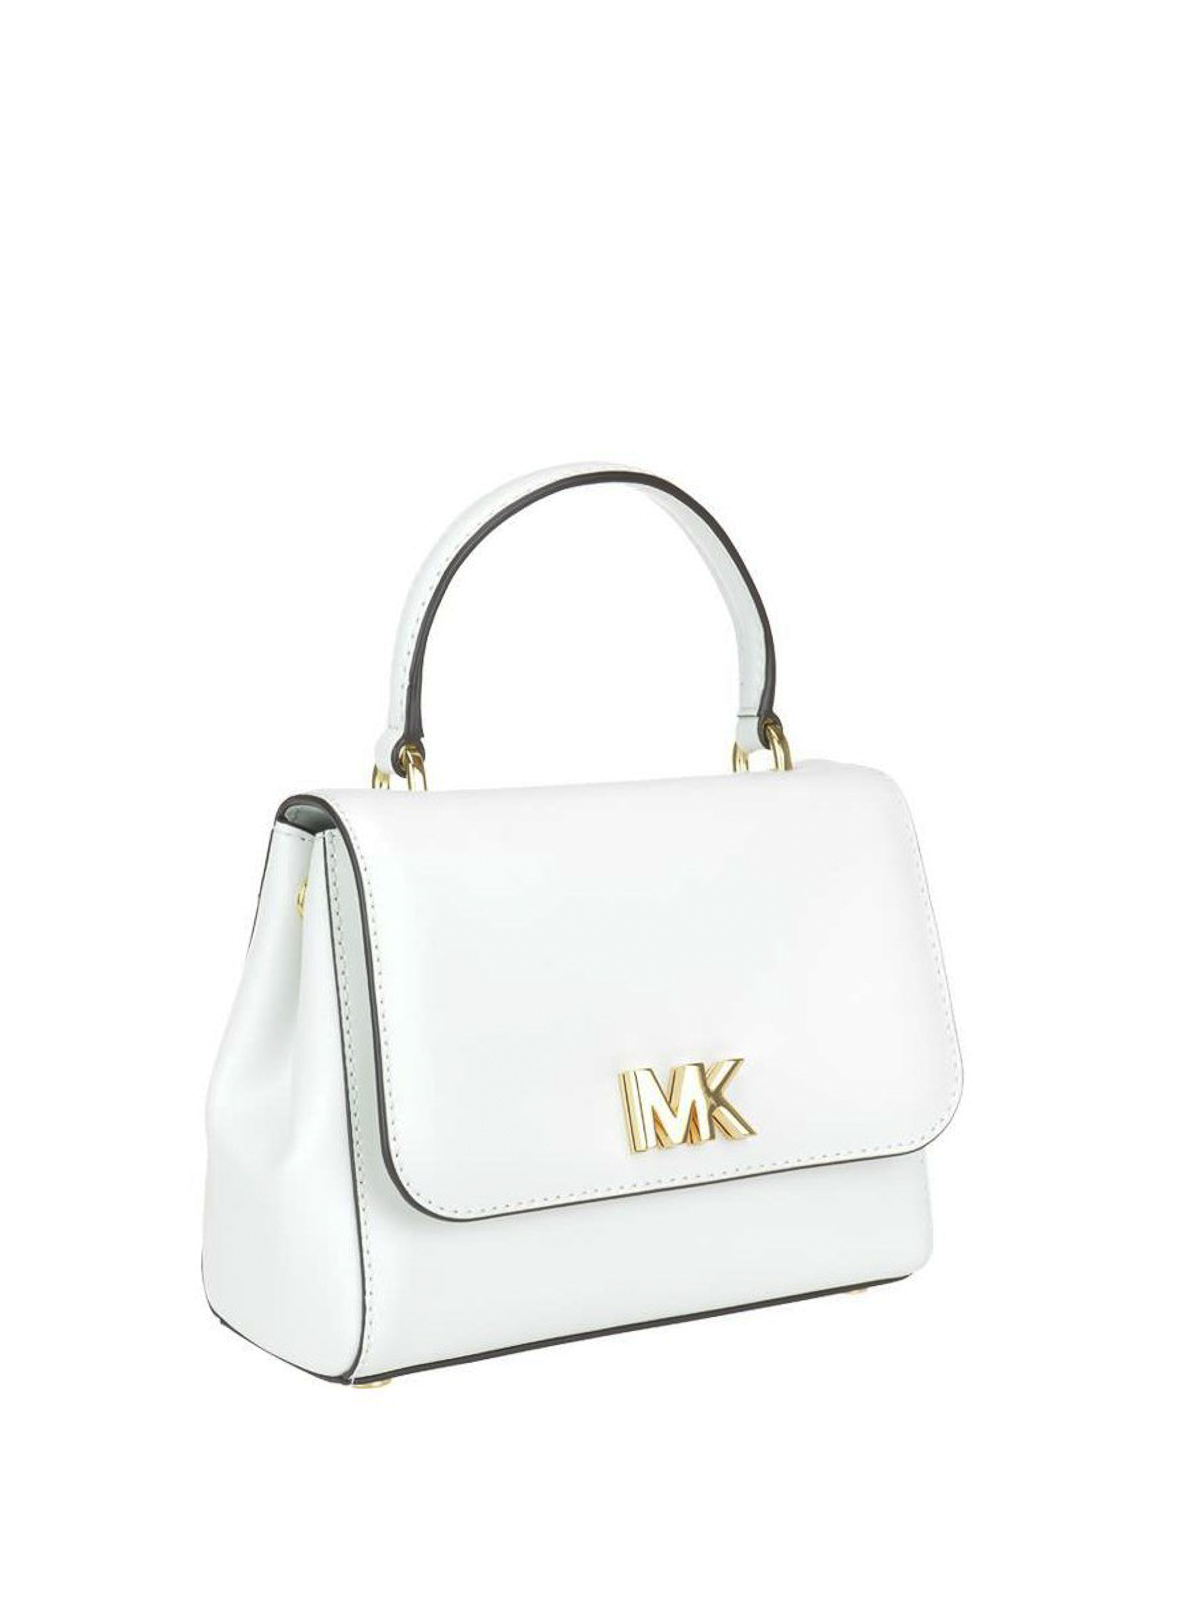 mk bag white